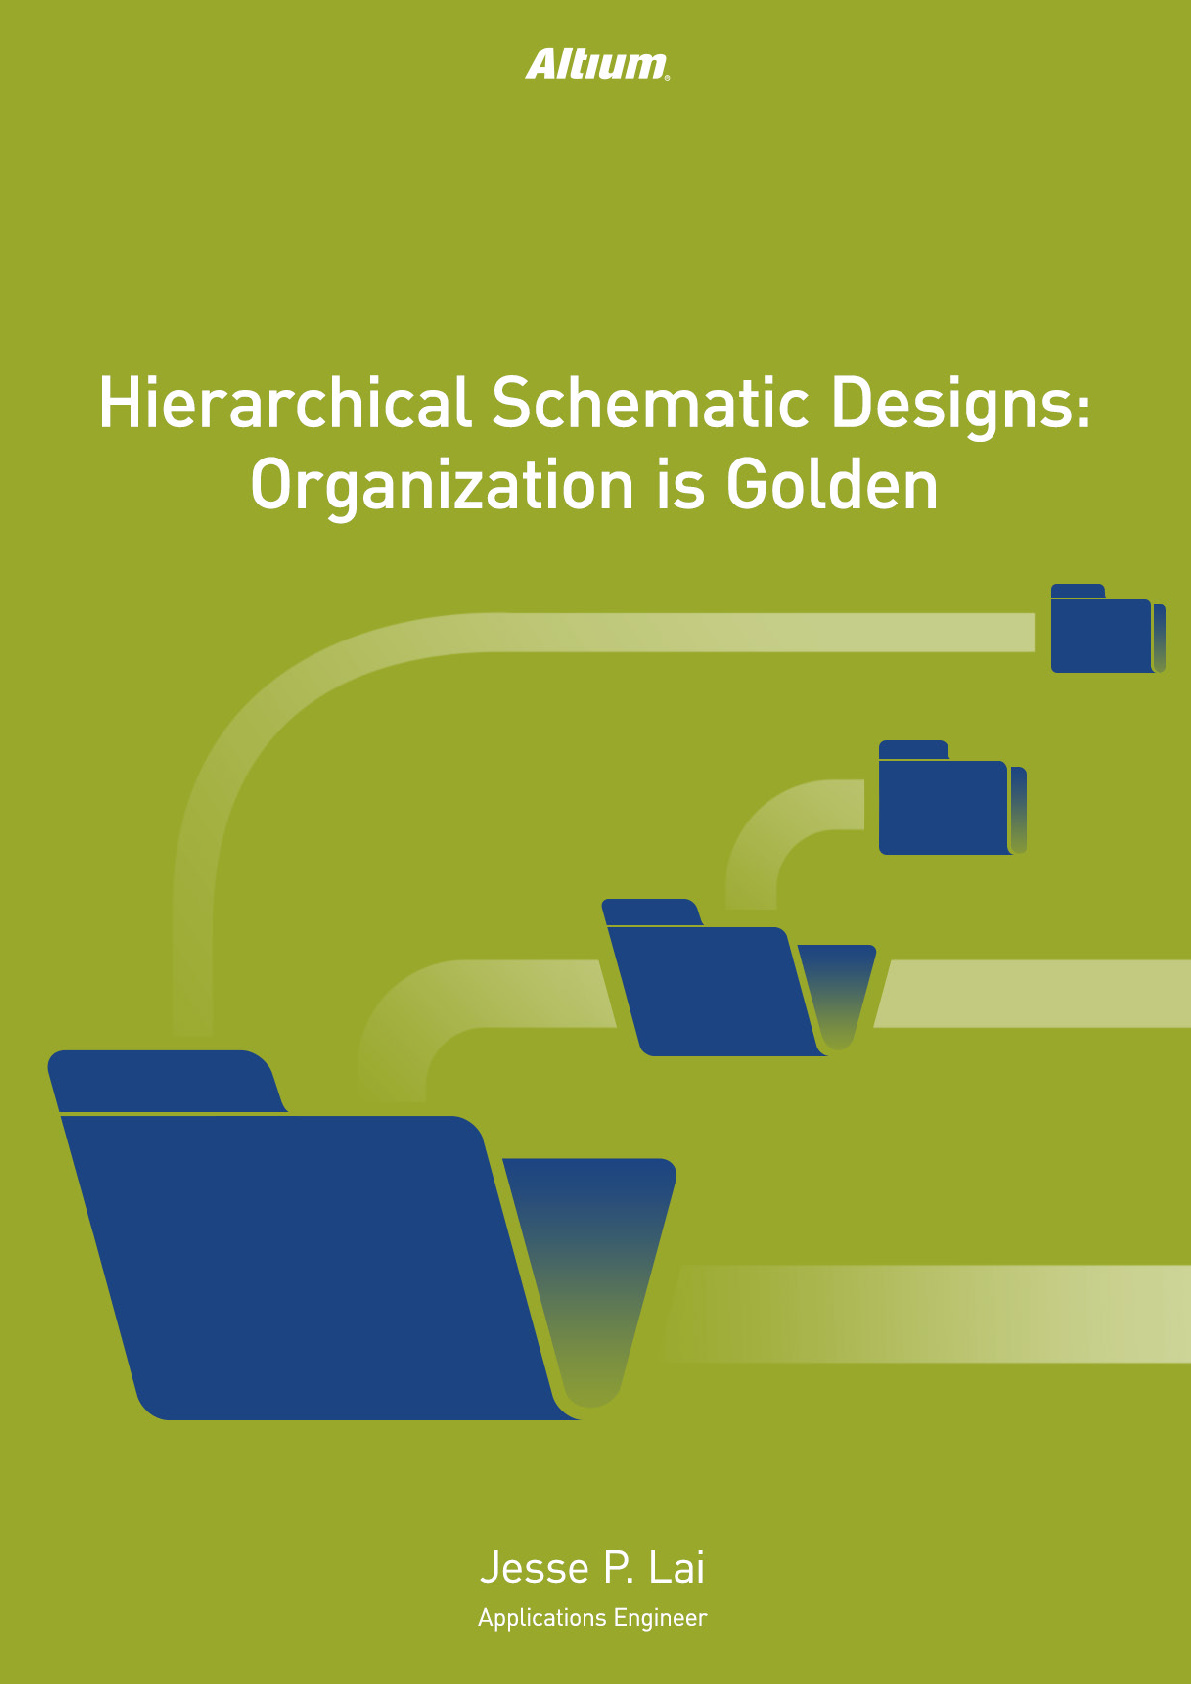 altium designer 19 hierarchical schematic